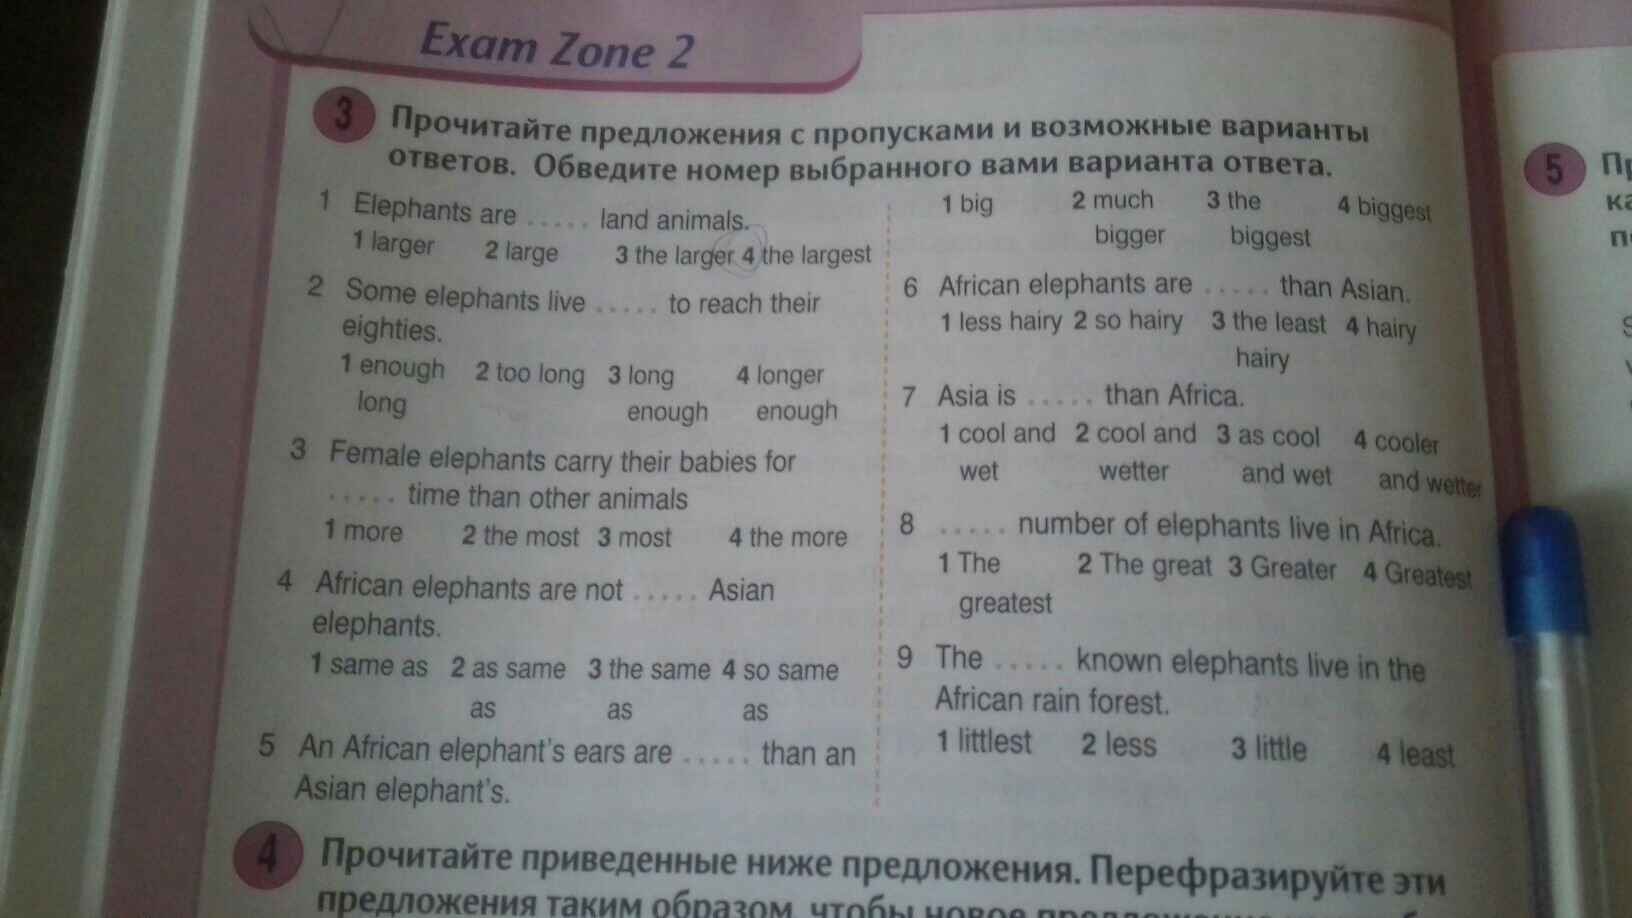 4exam ru test. Exam Zone 1 Round up 4 номер 5. Round up 4 Exam Zone 4 номер 2. Exam Zone 2 Round up 4 ответы. Exam Zone 1 ответы.